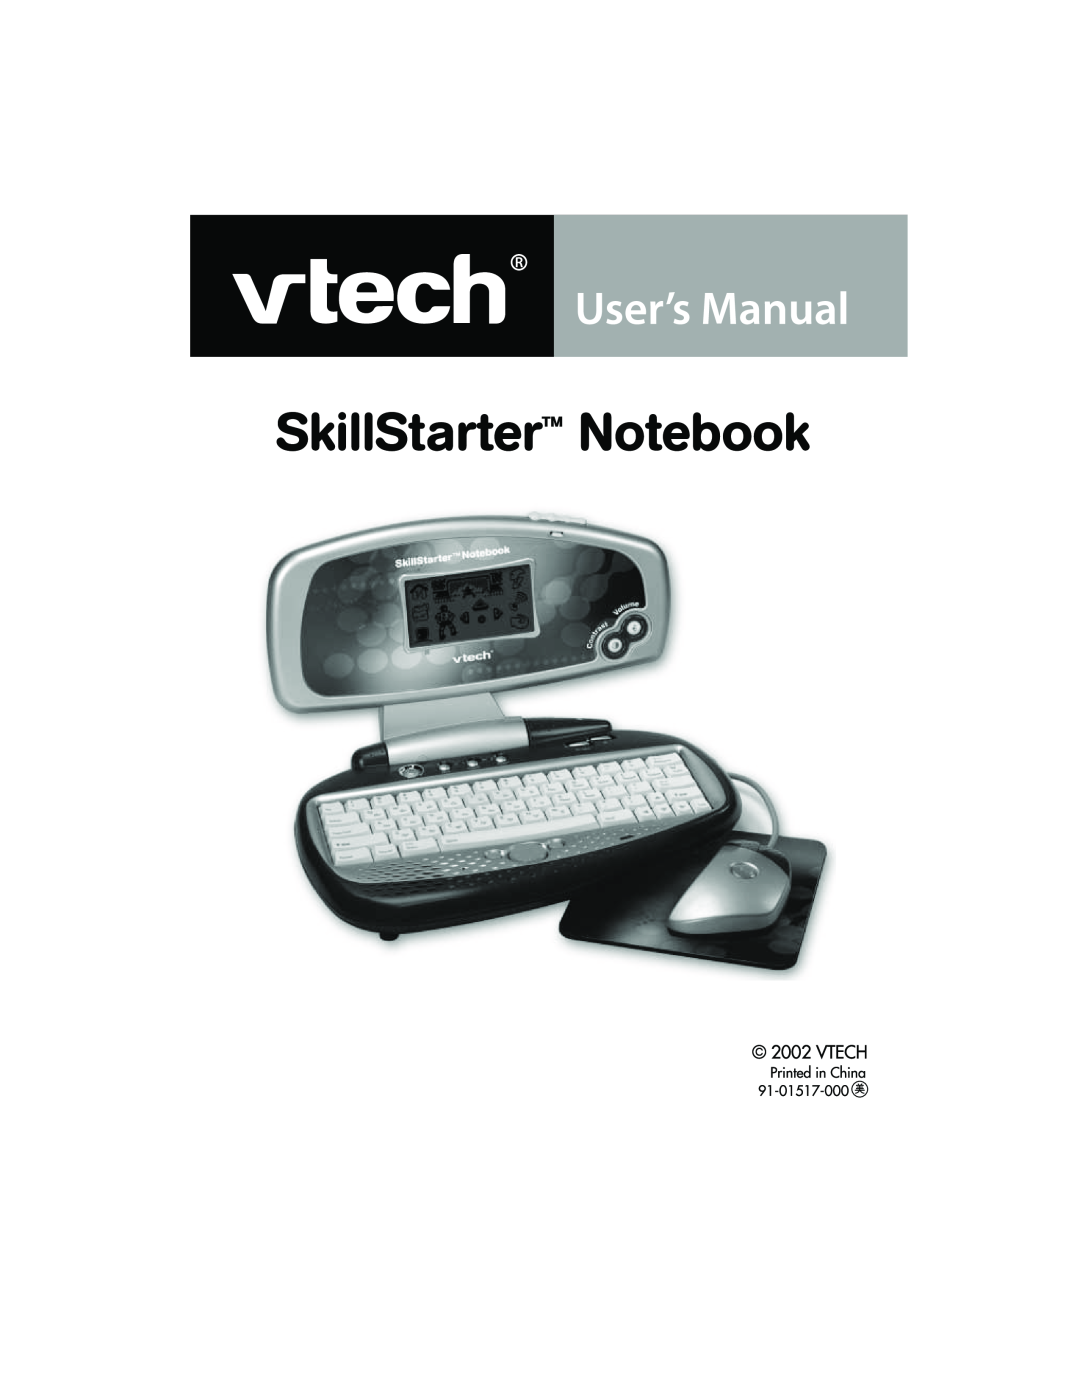 VTech SkillStarter Notebook manual 